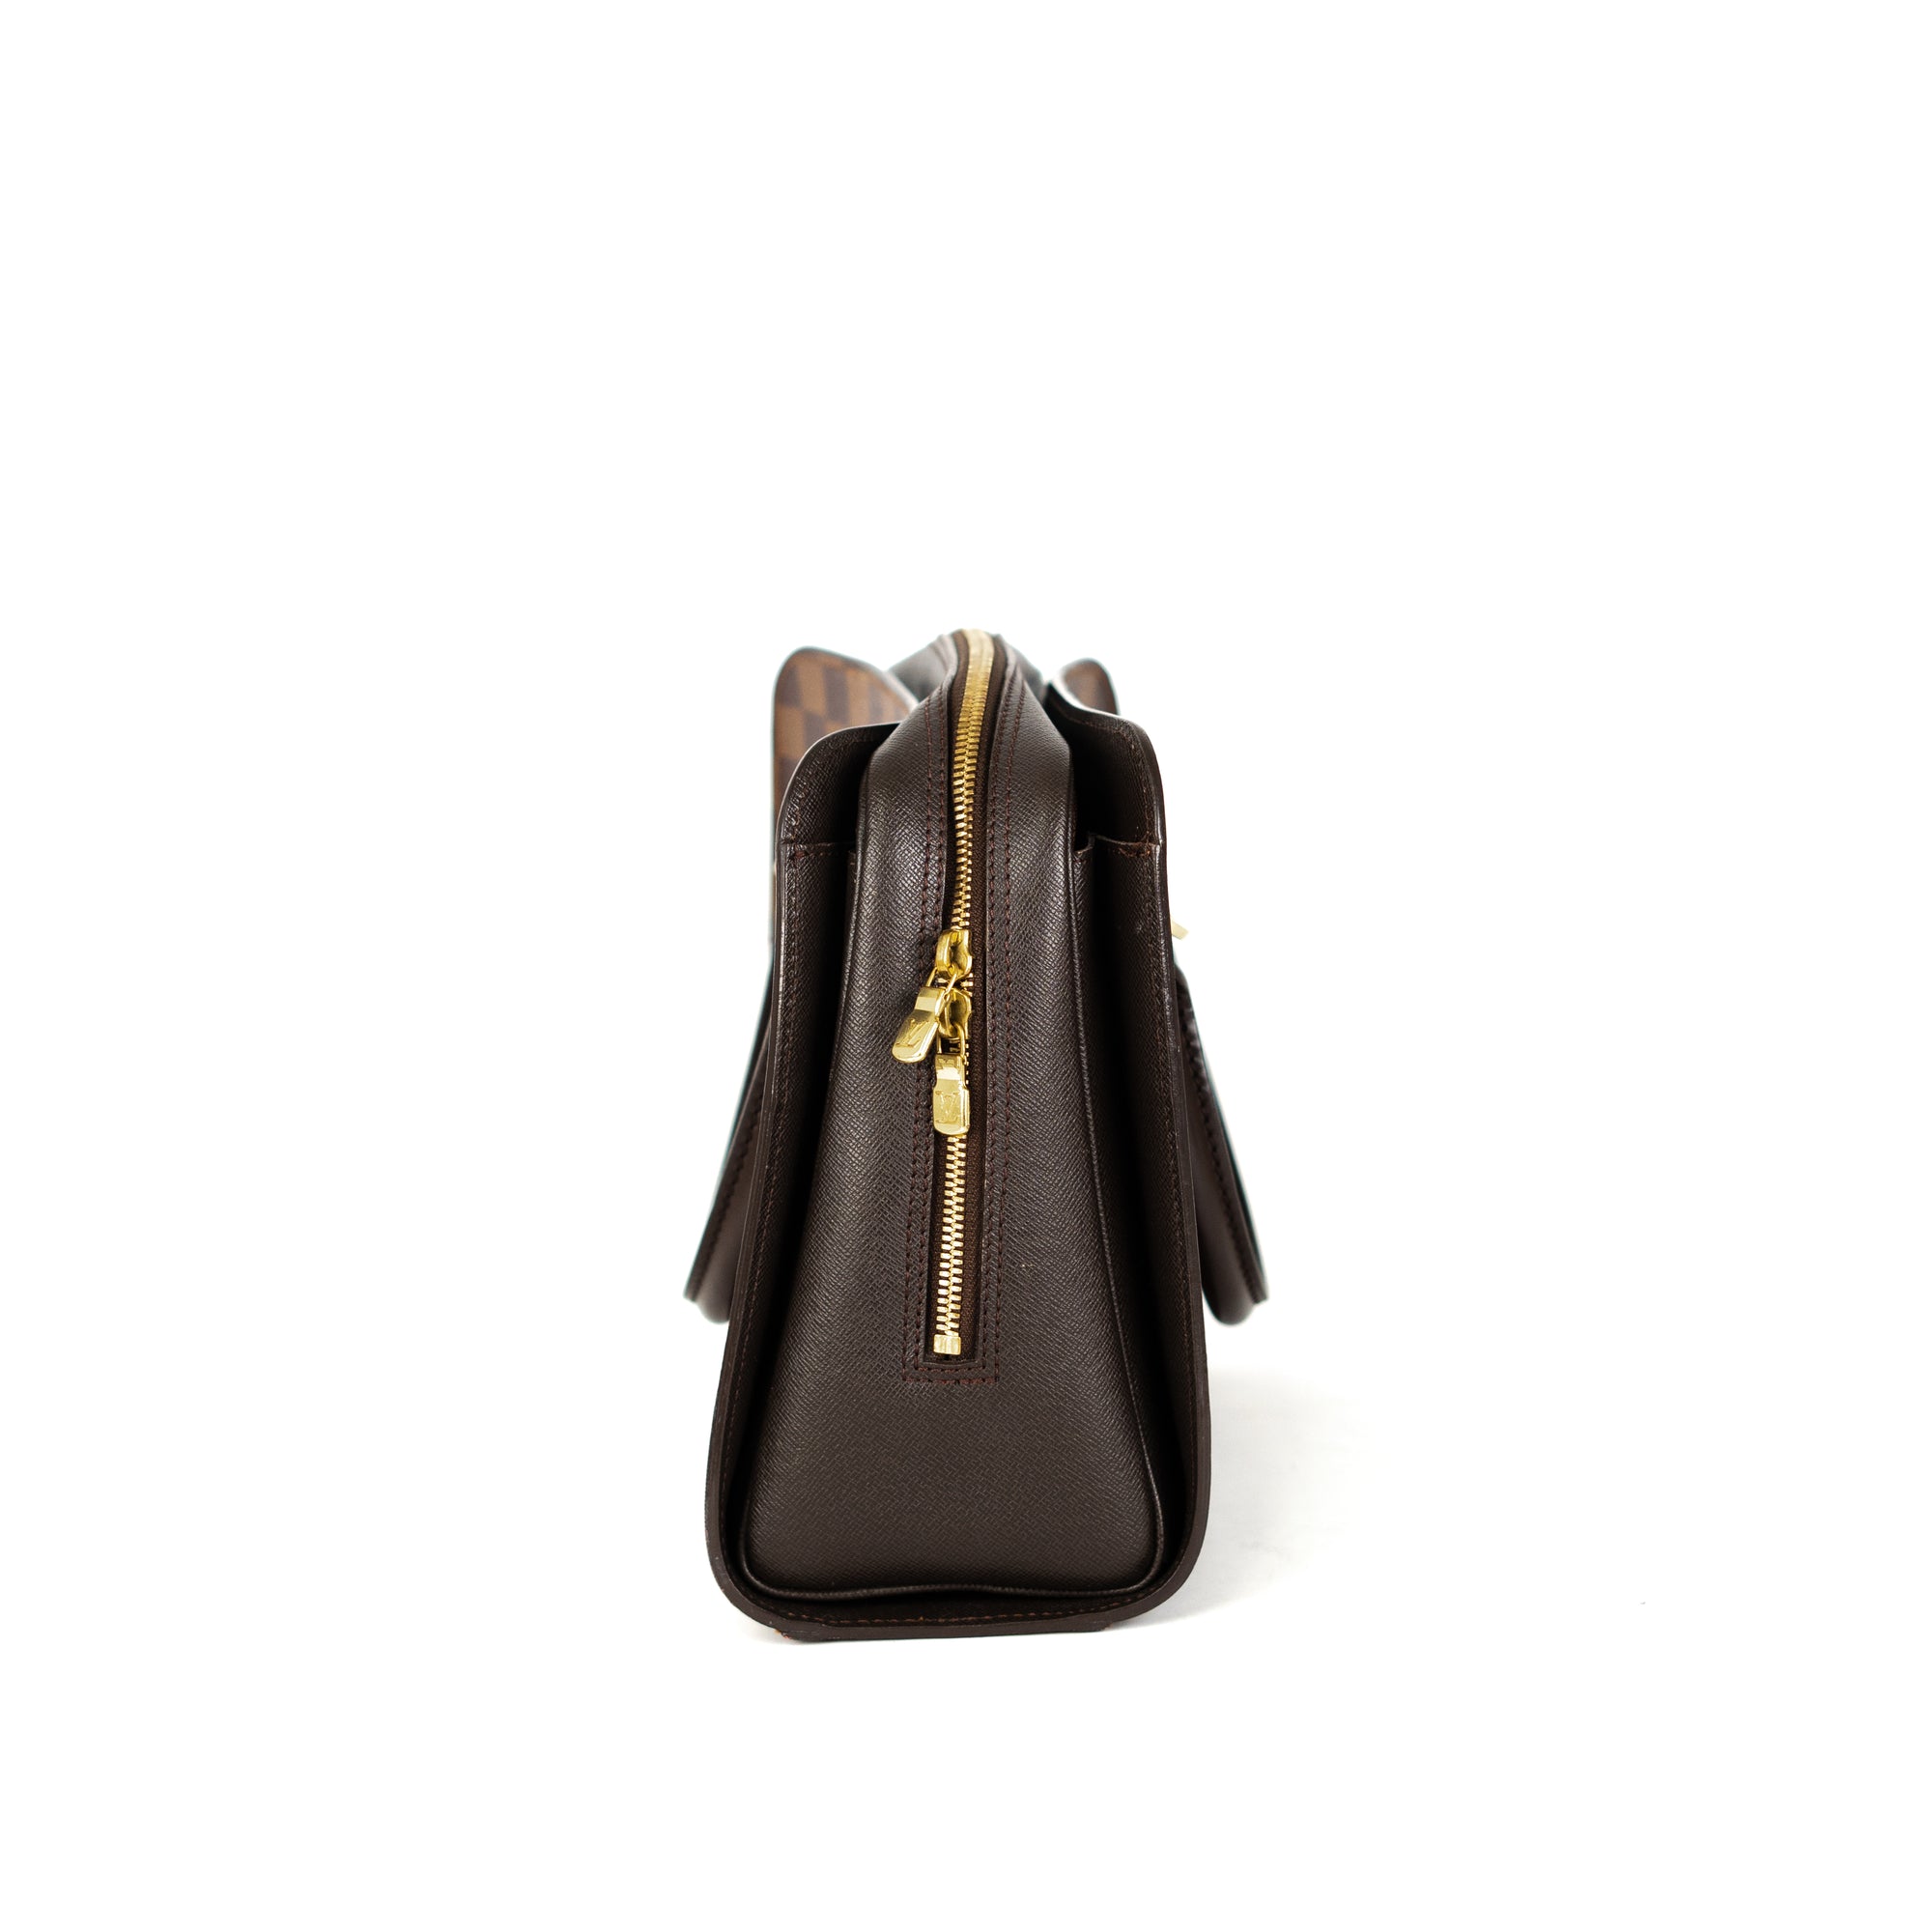 Louis Vuitton Triana Bag Damier Ebene - THE PURSE AFFAIR